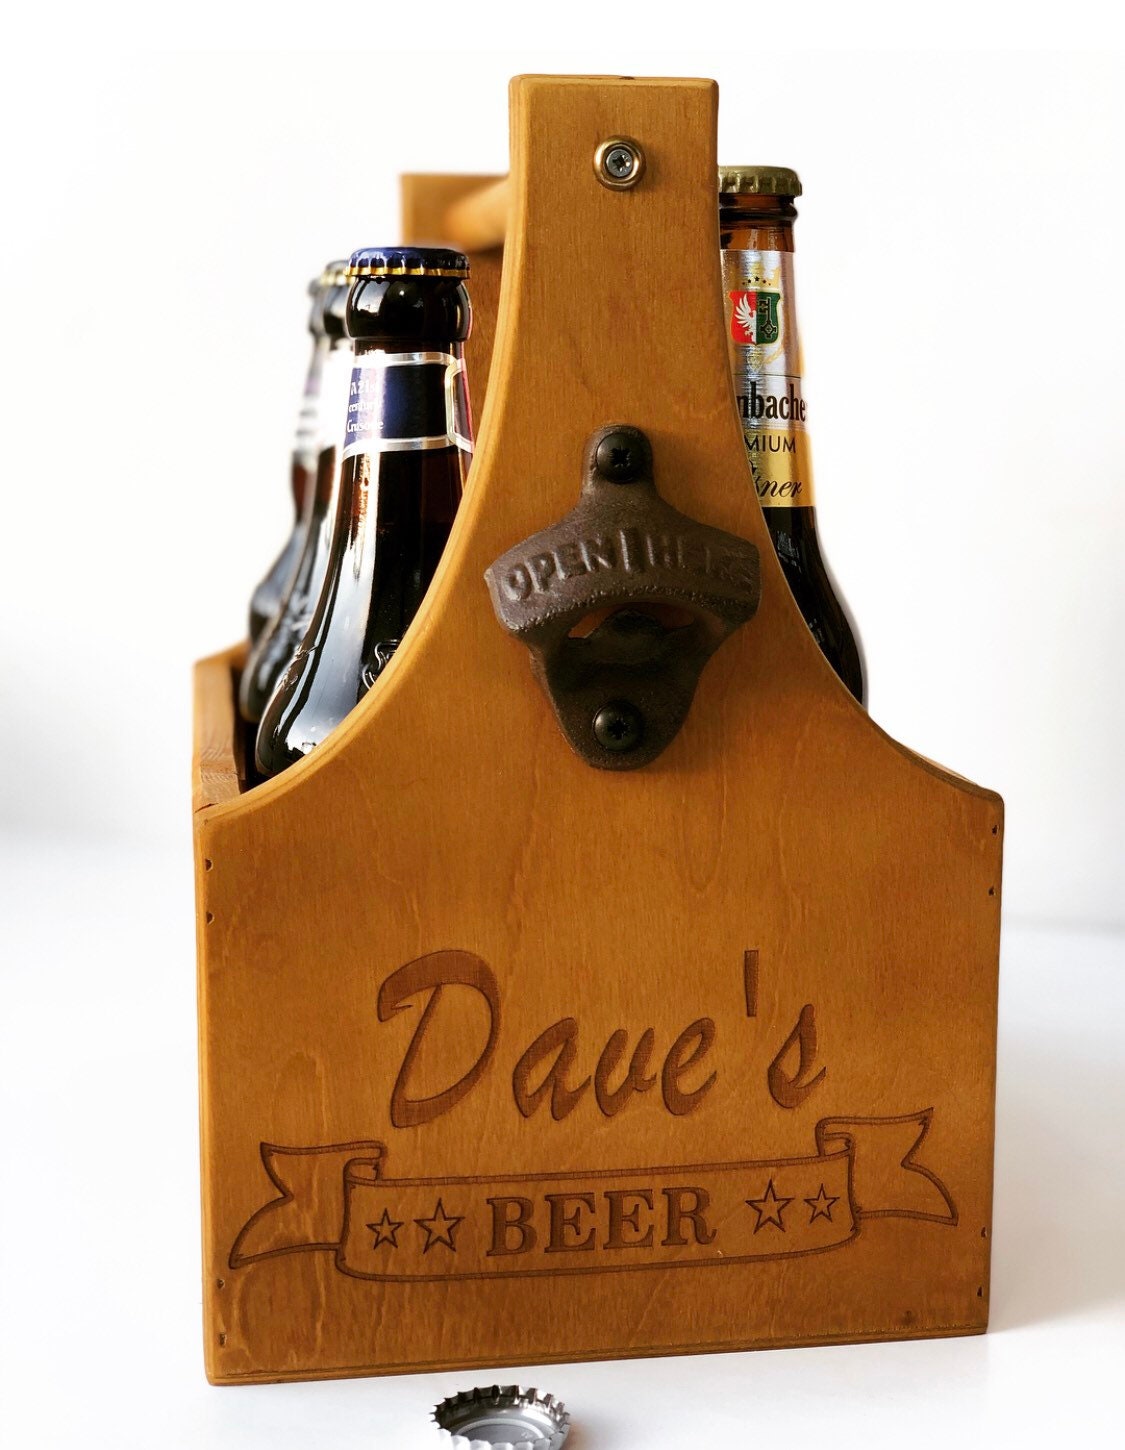 Beer Holder Personalised Beer Holder Cheers Beer Carrier Beer Bottle Holder  Beer Caddy Gift for Dads Grandads Beer Gifts LC694 -  Sweden